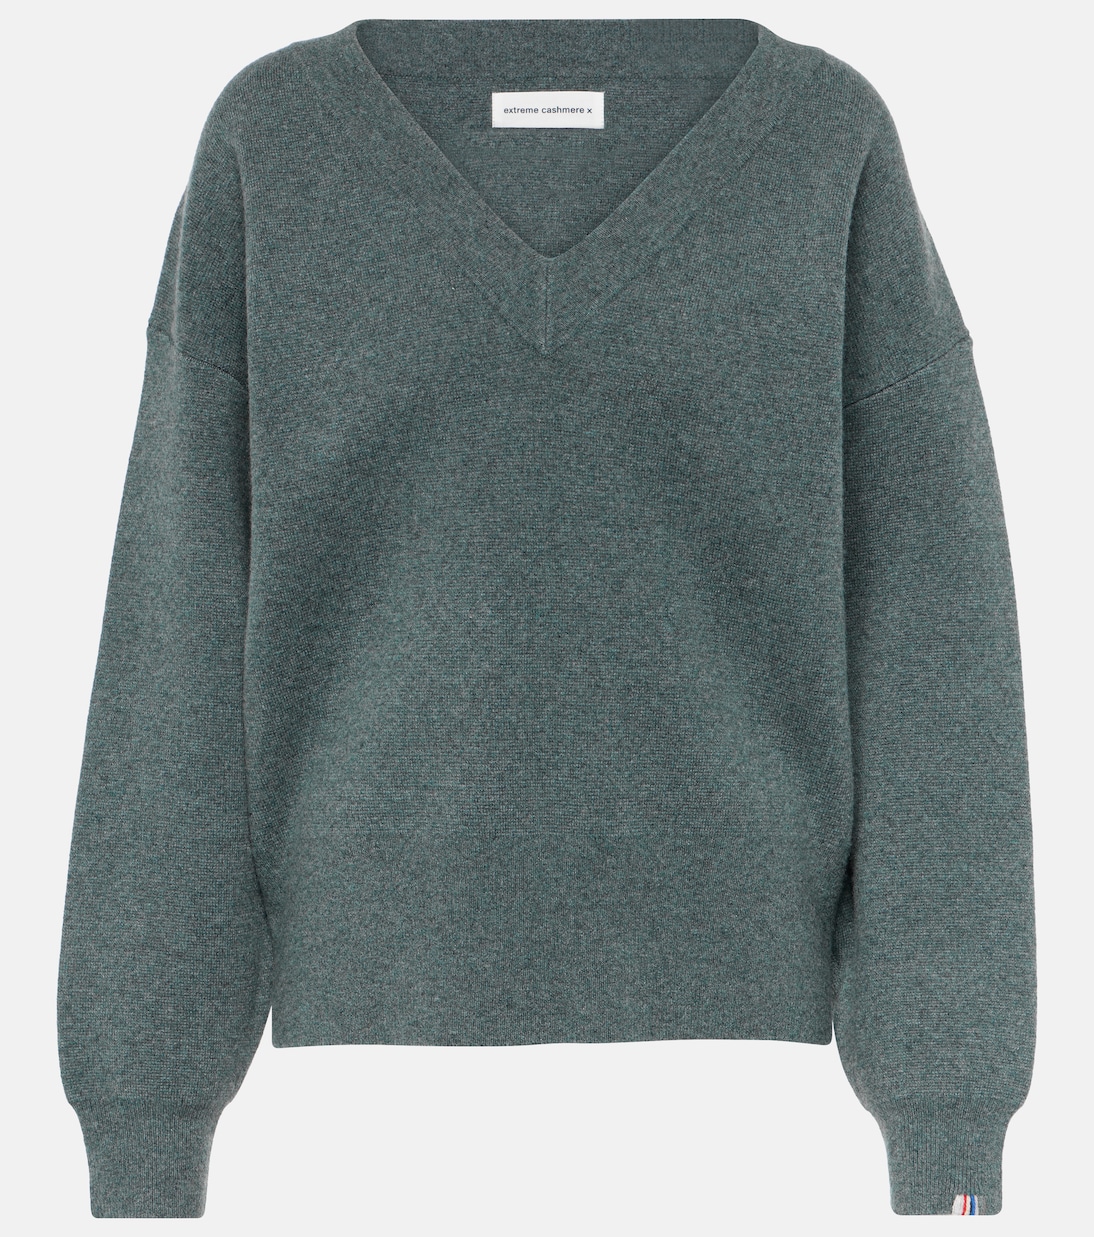 Кашемировый свитер lana Extreme Cashmere, серый